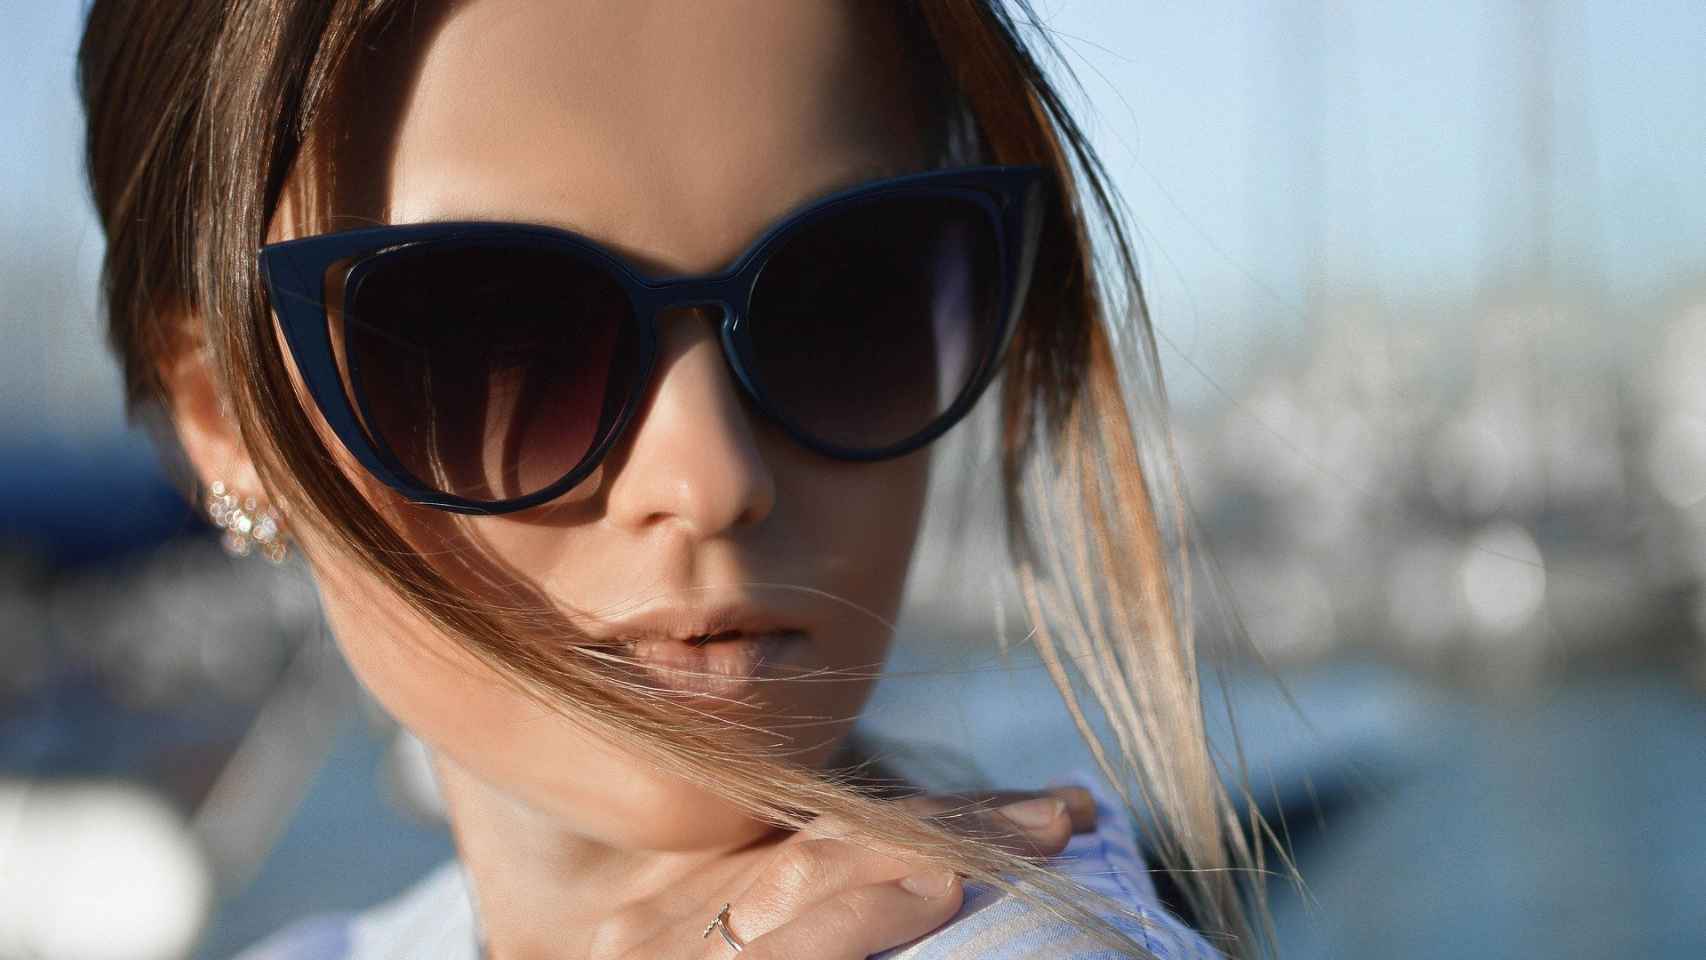 Gafas para solarium Protección homologadas ultravioleta en Salud y Belleza UV 